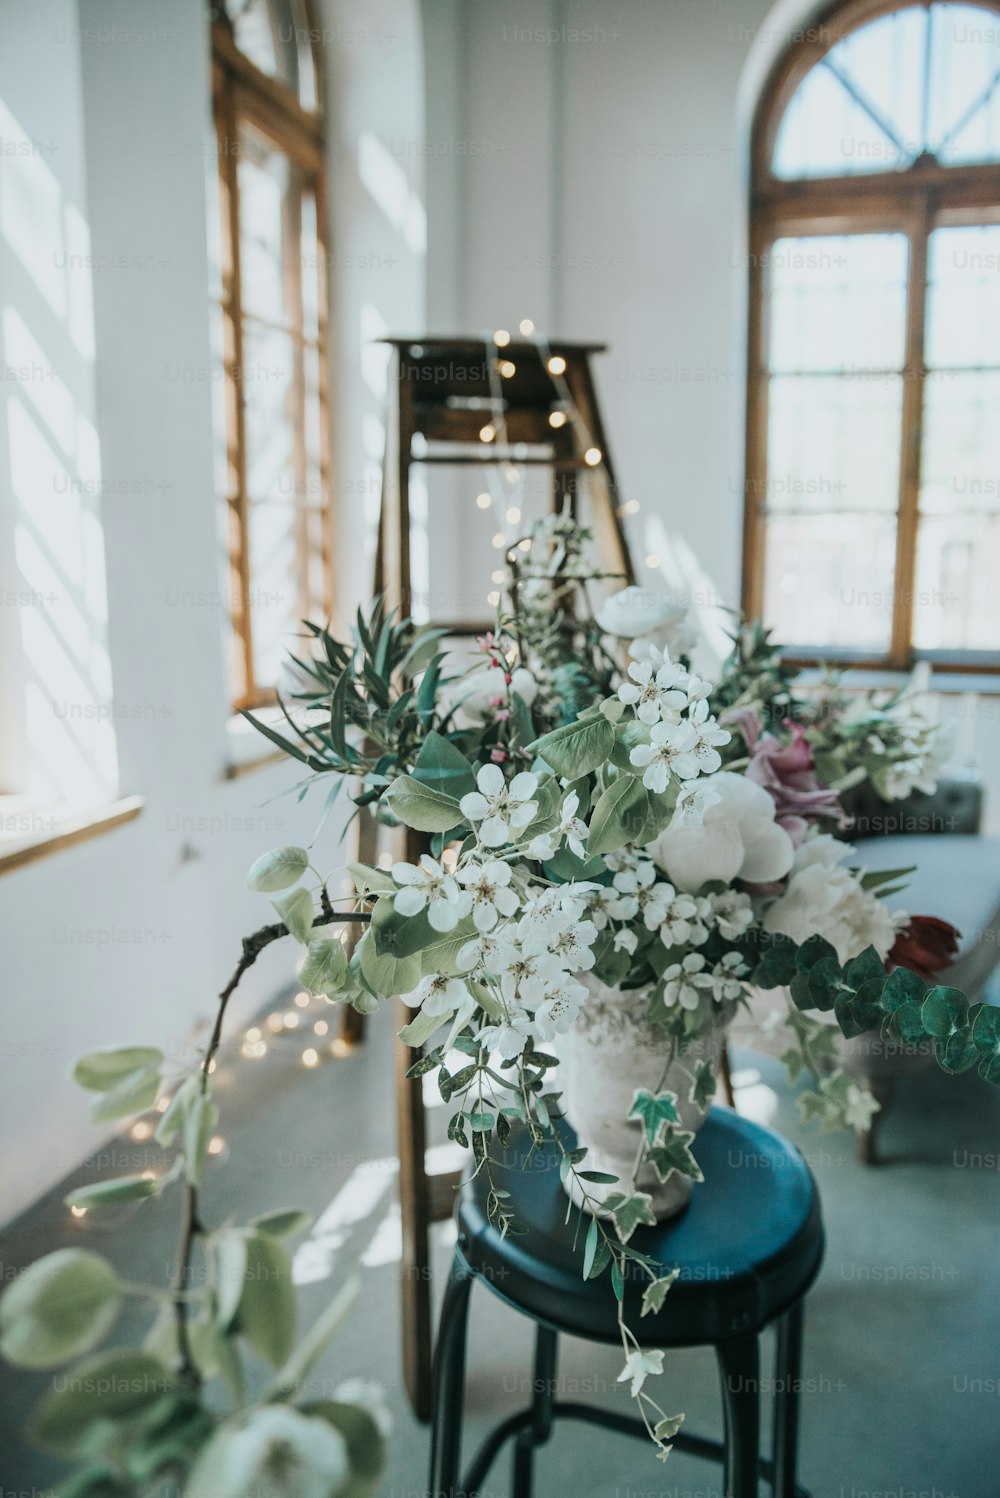 eine Vase gefüllt mit weißen Blumen, die auf einem blauen Hocker sitzt